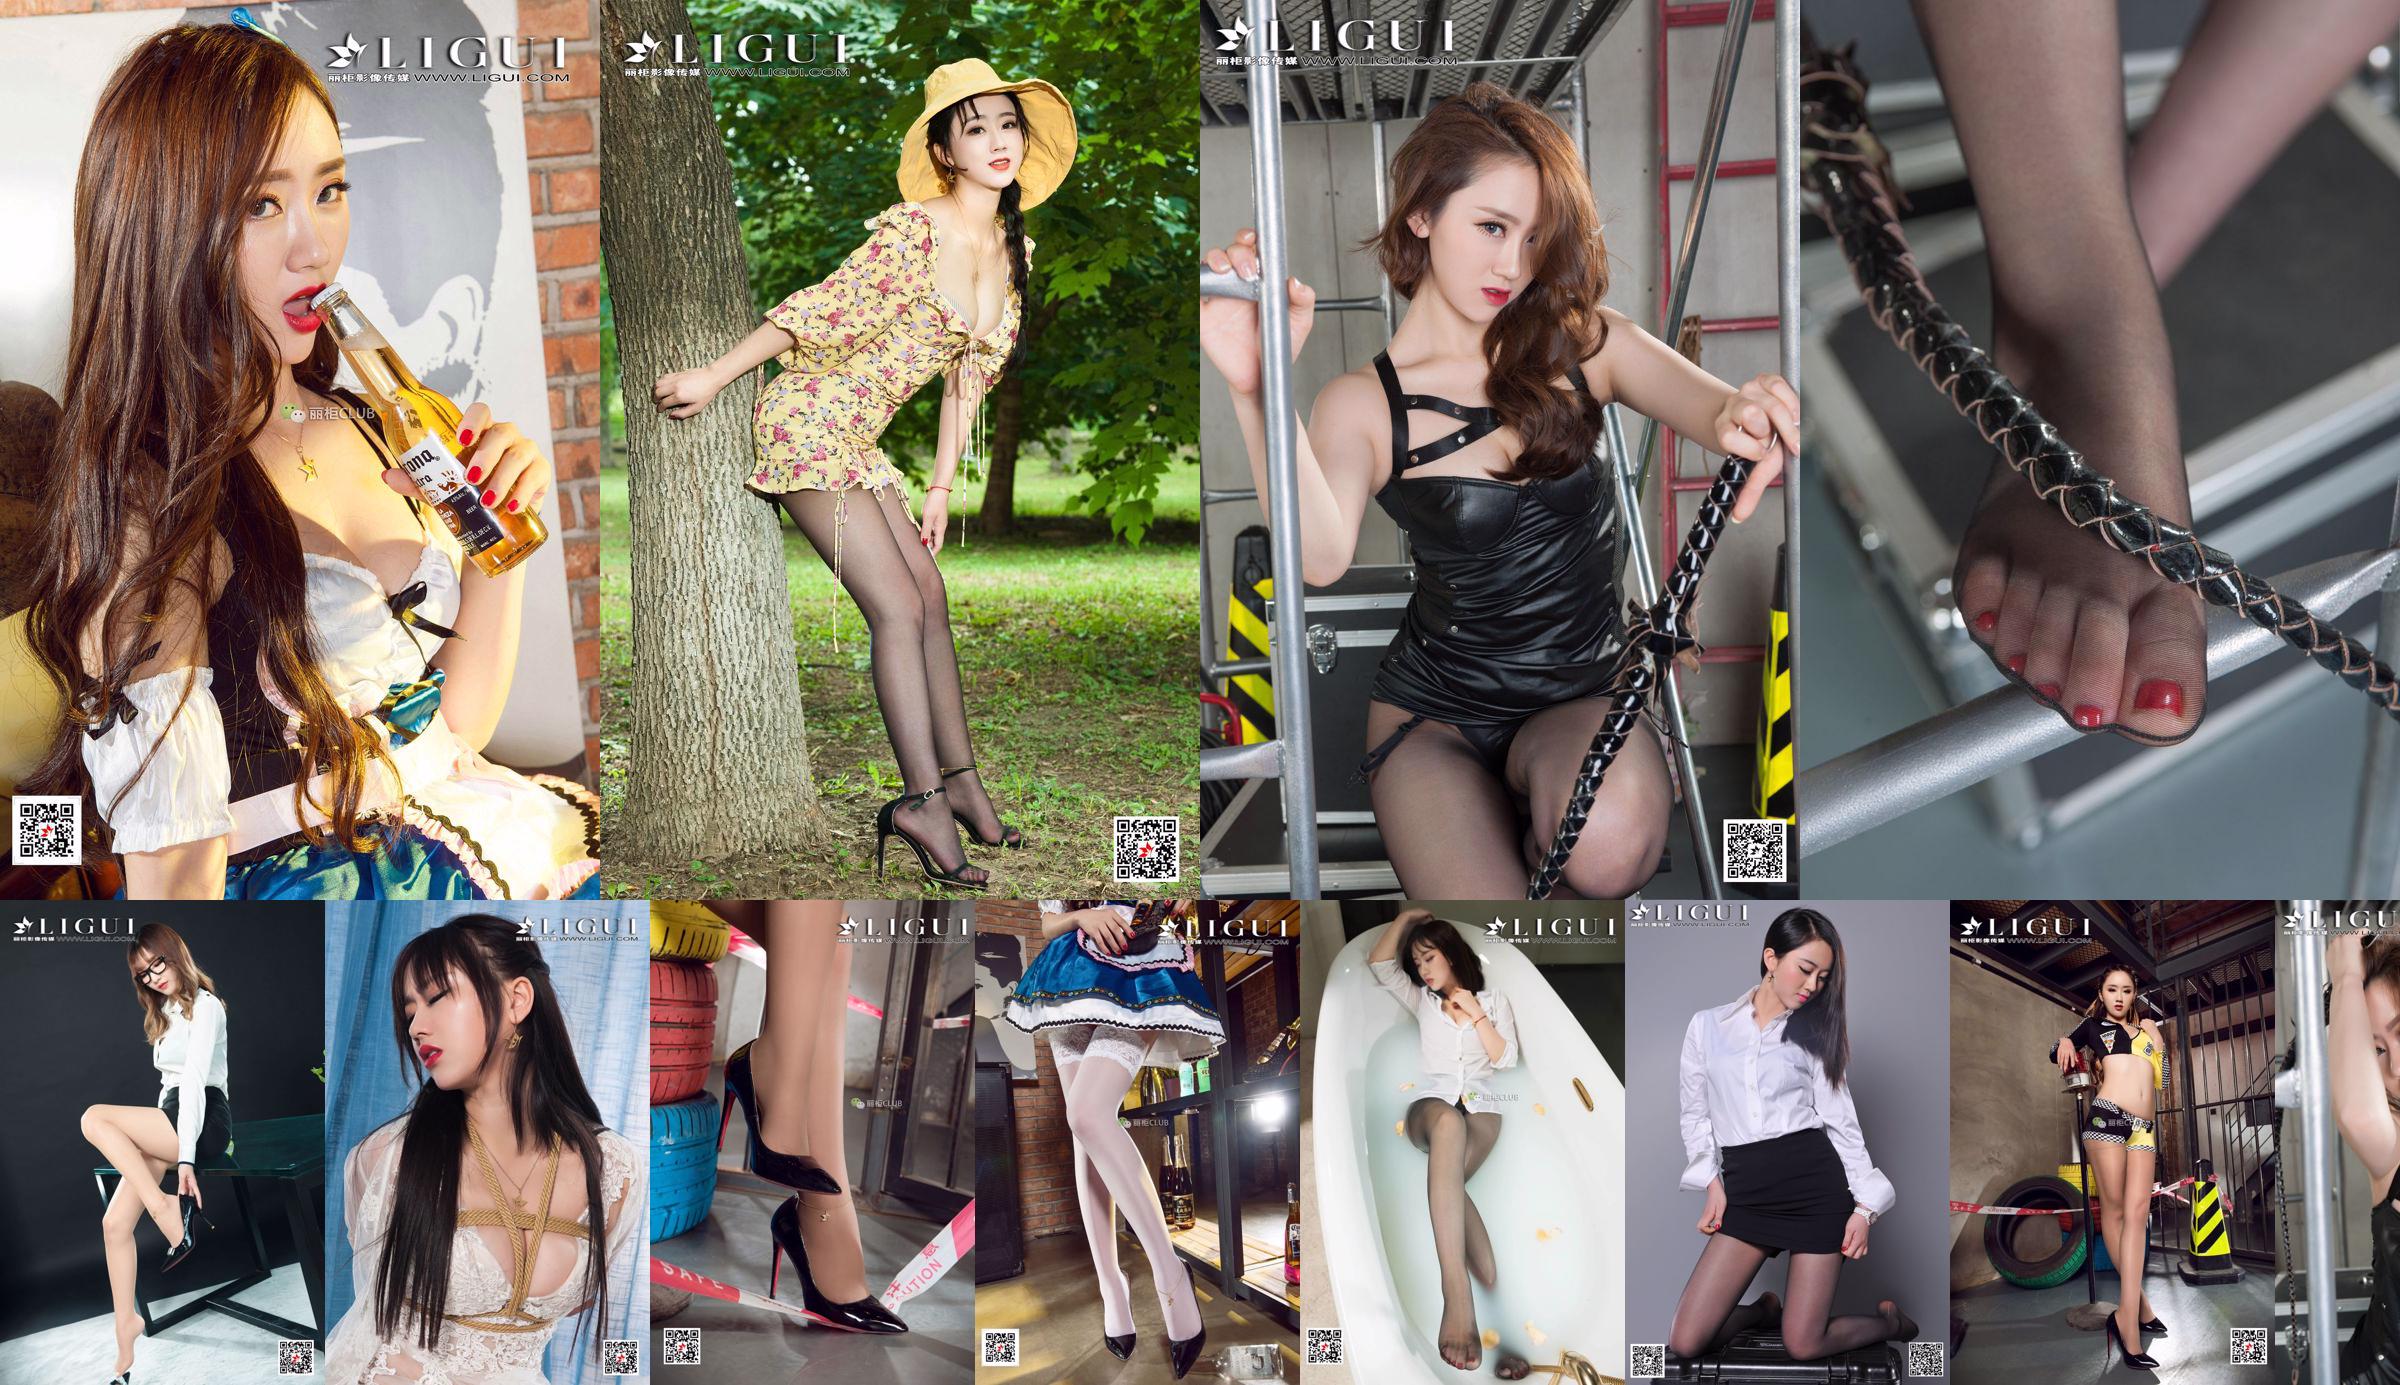 Người mẫu Ranran & Wen Rui "Sự cám dỗ của những nữ sinh song sinh với đôi chân lụa" [Ligui Ligui] No.9e8aba Trang 31